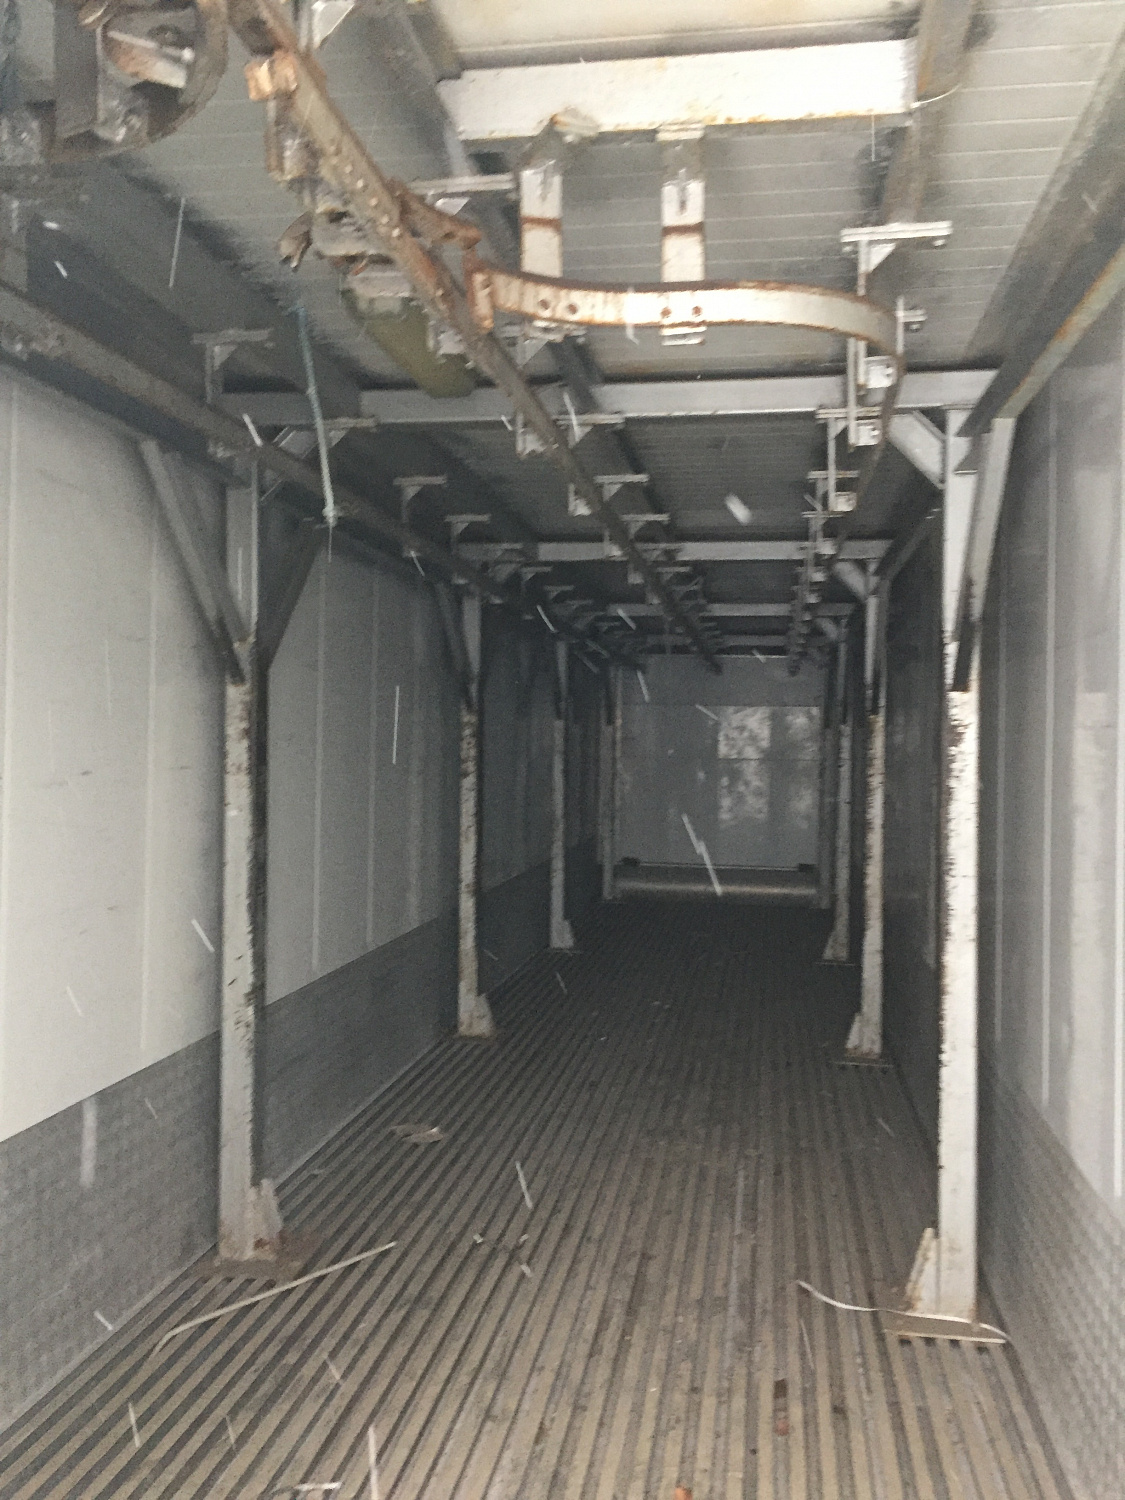 Рефрижераторный контейнер 40 футов с подвесами для полутуш 2001 года выпуска